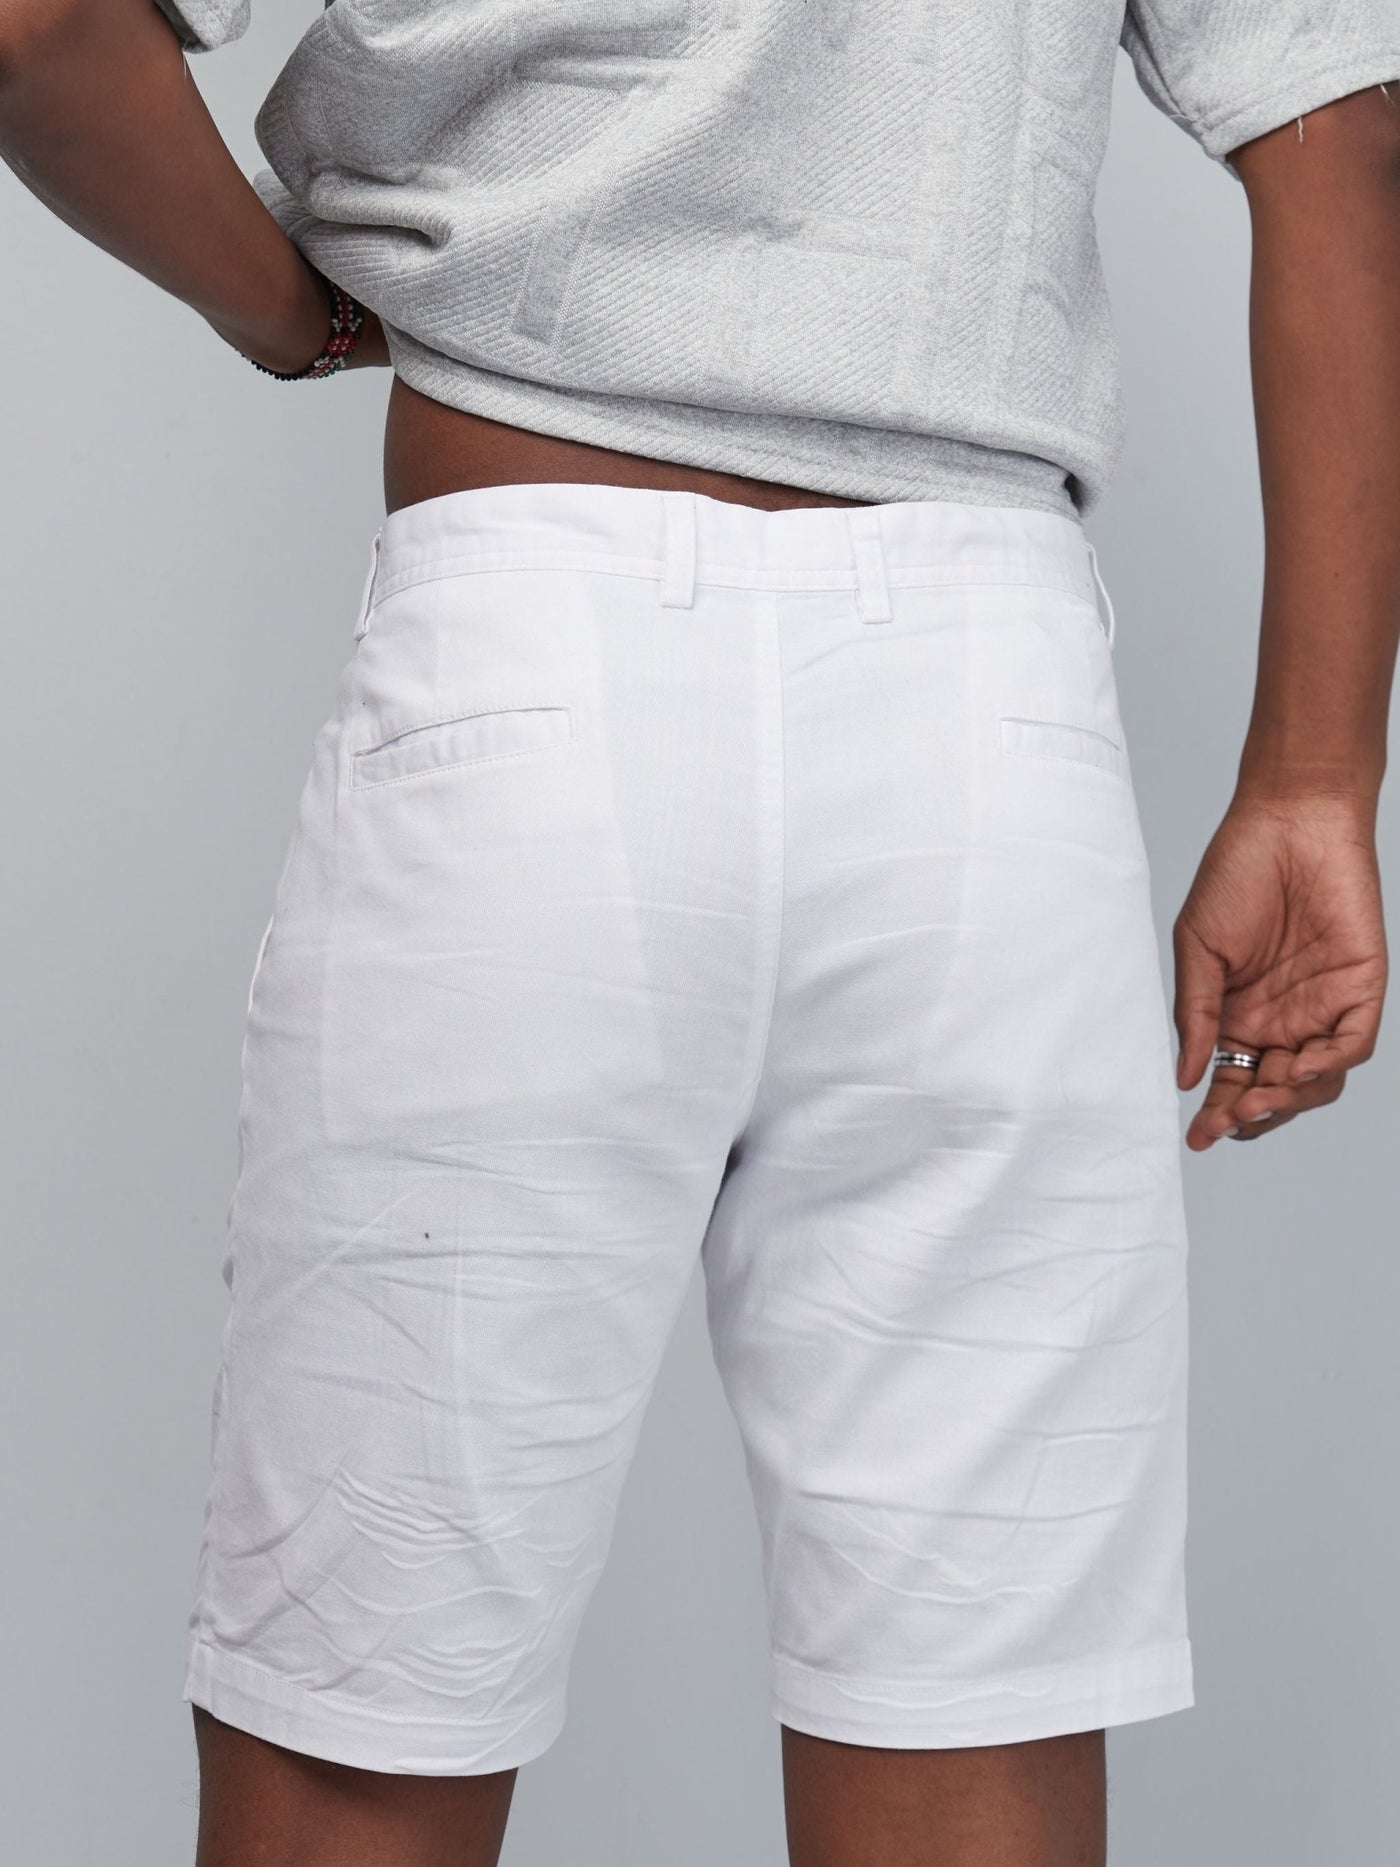 Zetu Men's Chino Shorts - White - Shopzetu